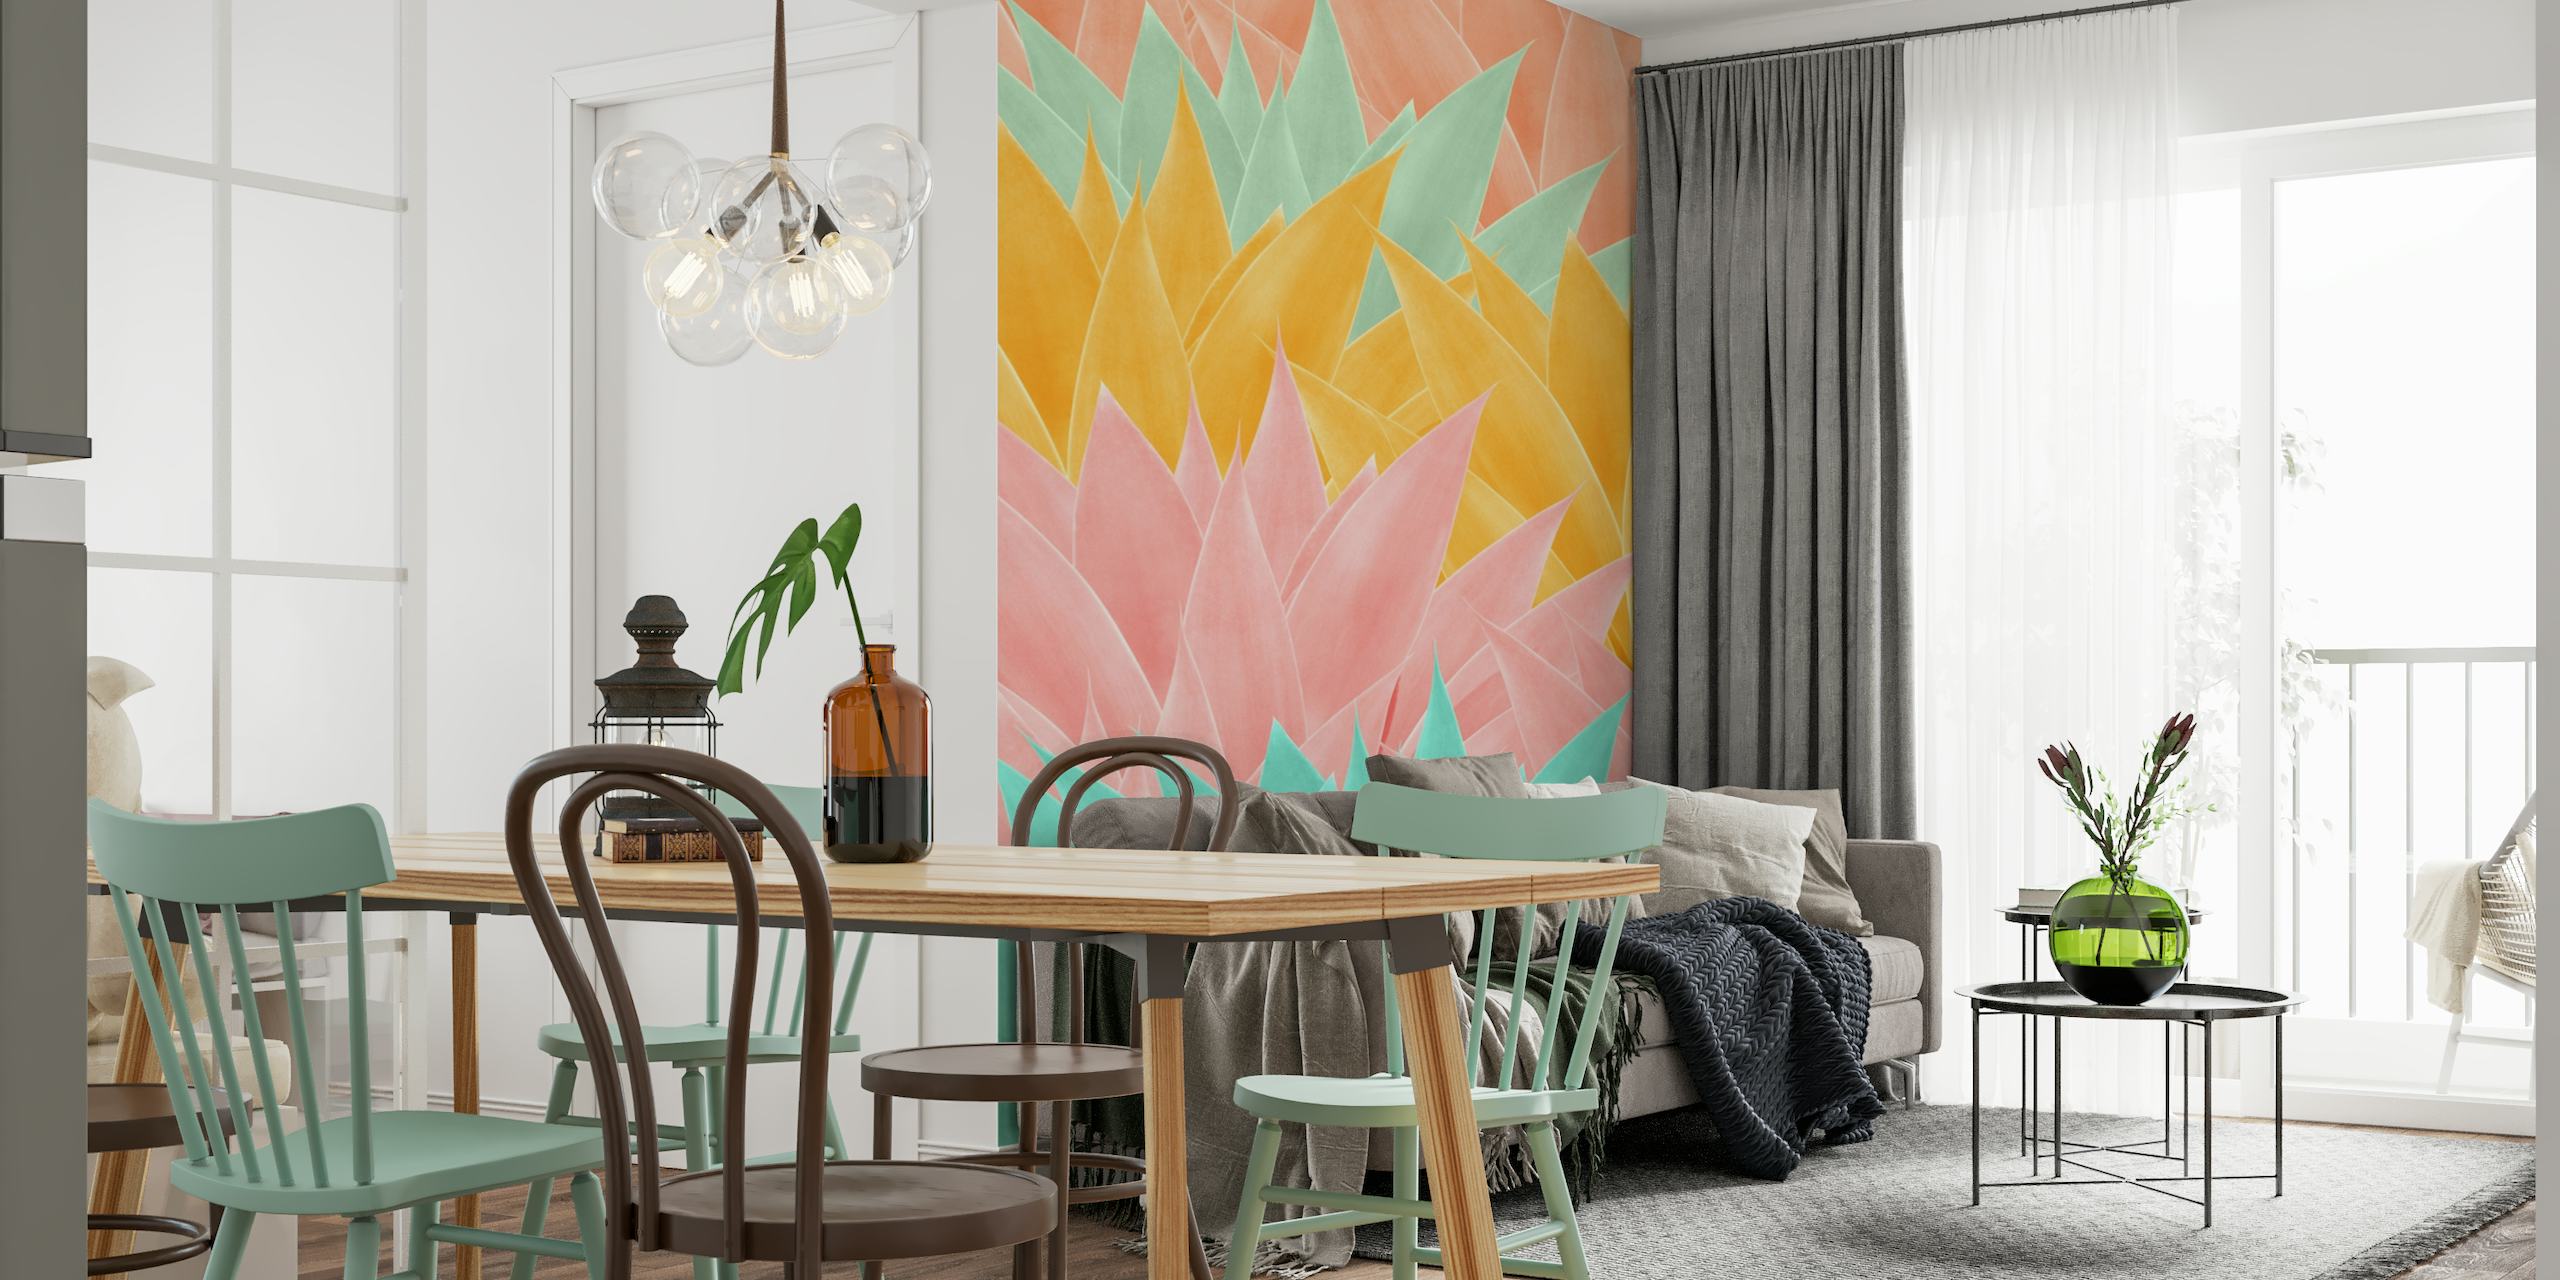 Kleurrijke muurschildering met agavebladpatroon in de kleuren roze, geel en aqua voor een eigentijds interieur.